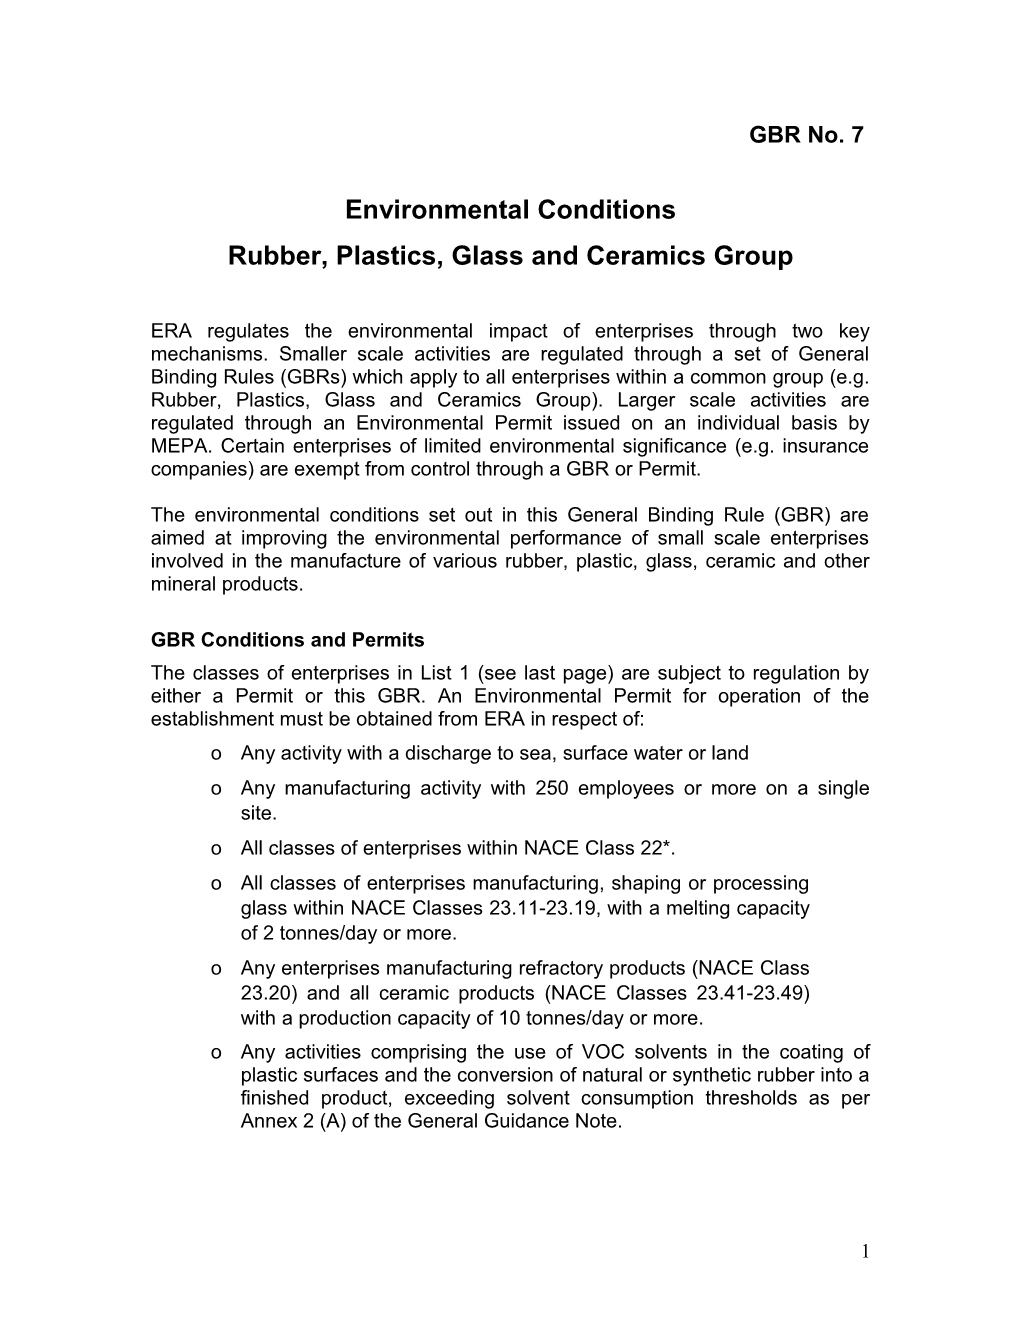 GBR 7 Rubber, Plastics Etc (Notes)